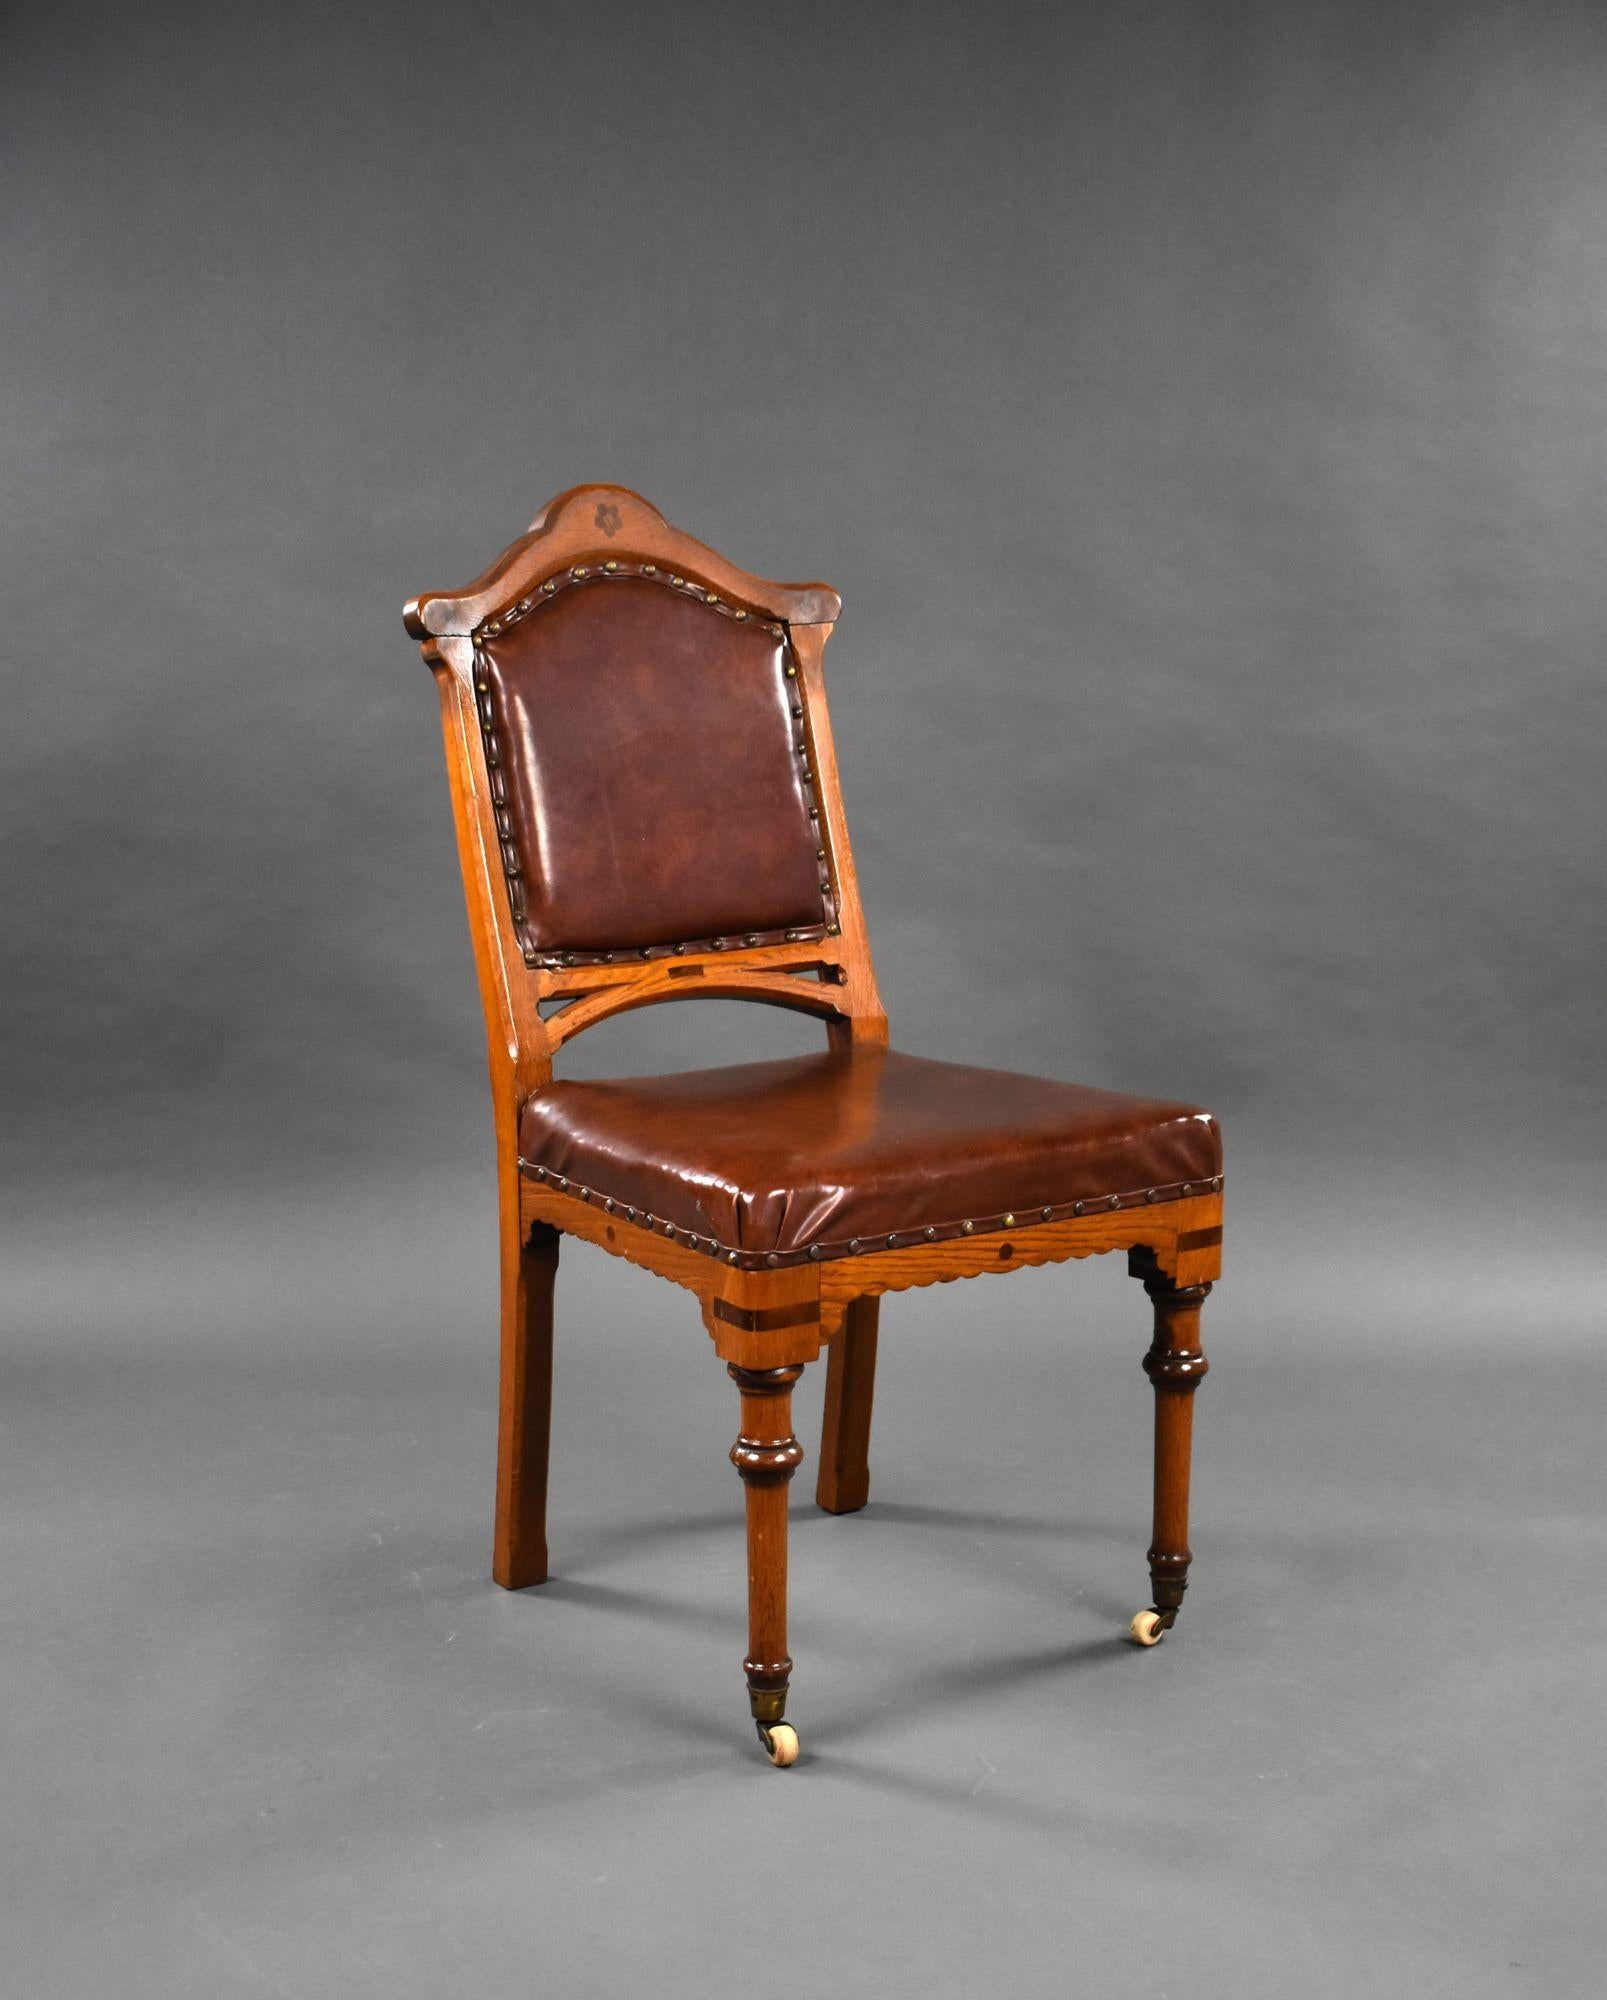 Zum Verkauf steht ein Satz von 6 viktorianischen Eichen-Esszimmerstühlen, gepolstert mit Leder, auf gedrechselten Beinen, die auf Rollen enden. Alle Stühle sind in gutem Zustand und bleiben strukturell intakt. Die Polsterung der Sitze ist leicht